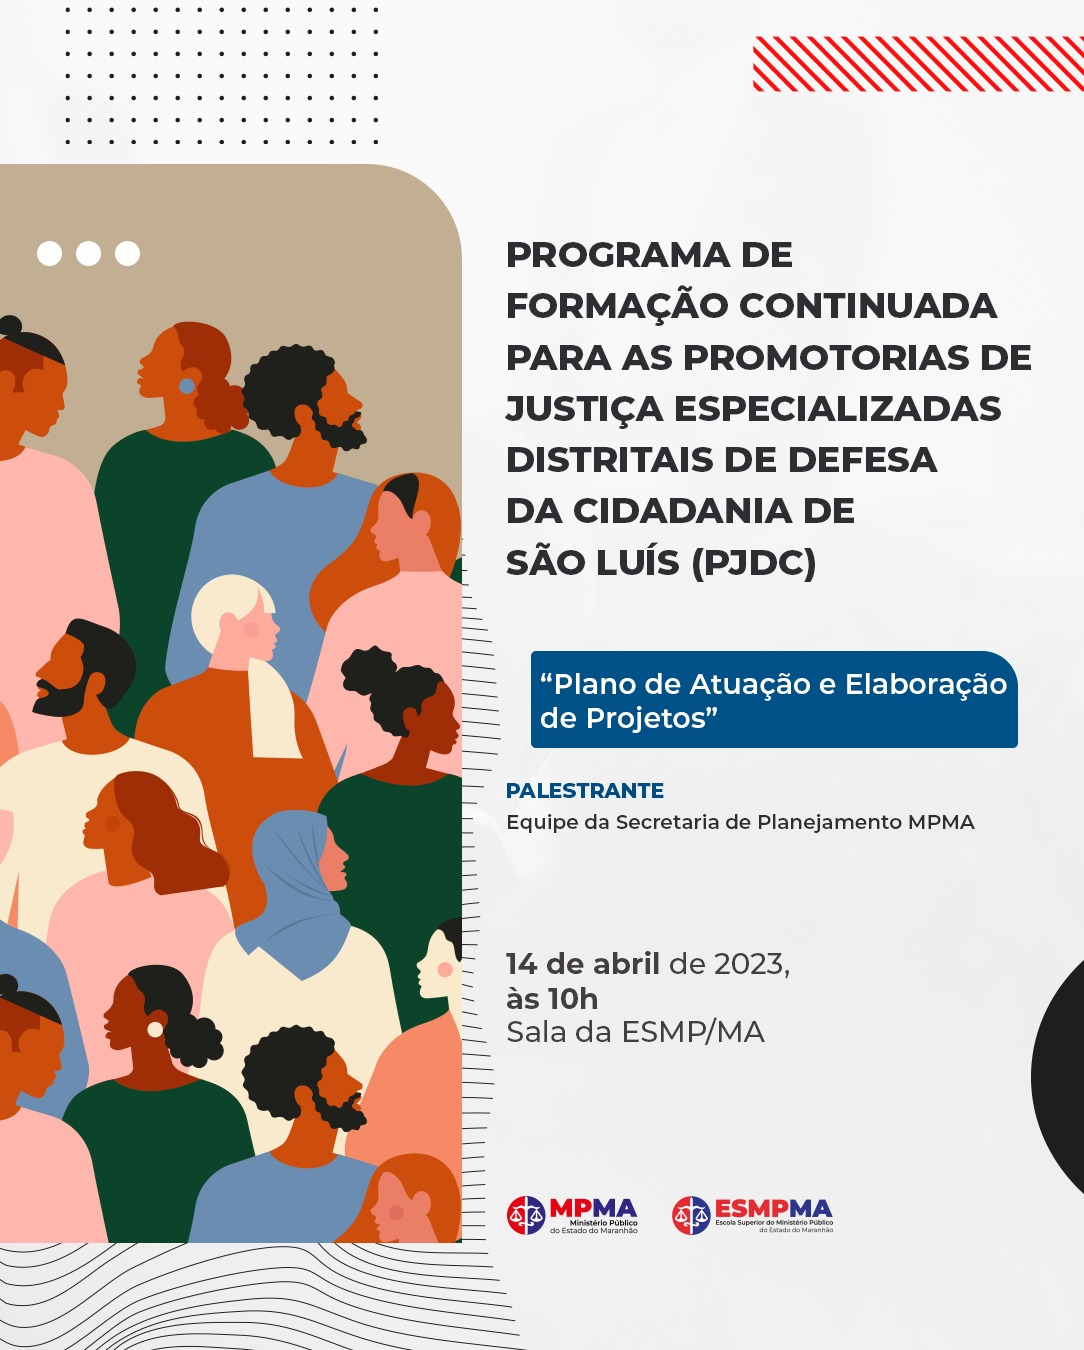 Programa de Formação Continuada para as Promotorias de Justiça Especializadas Distritais de Defesa da Cidadania de São Luís (PJDC)